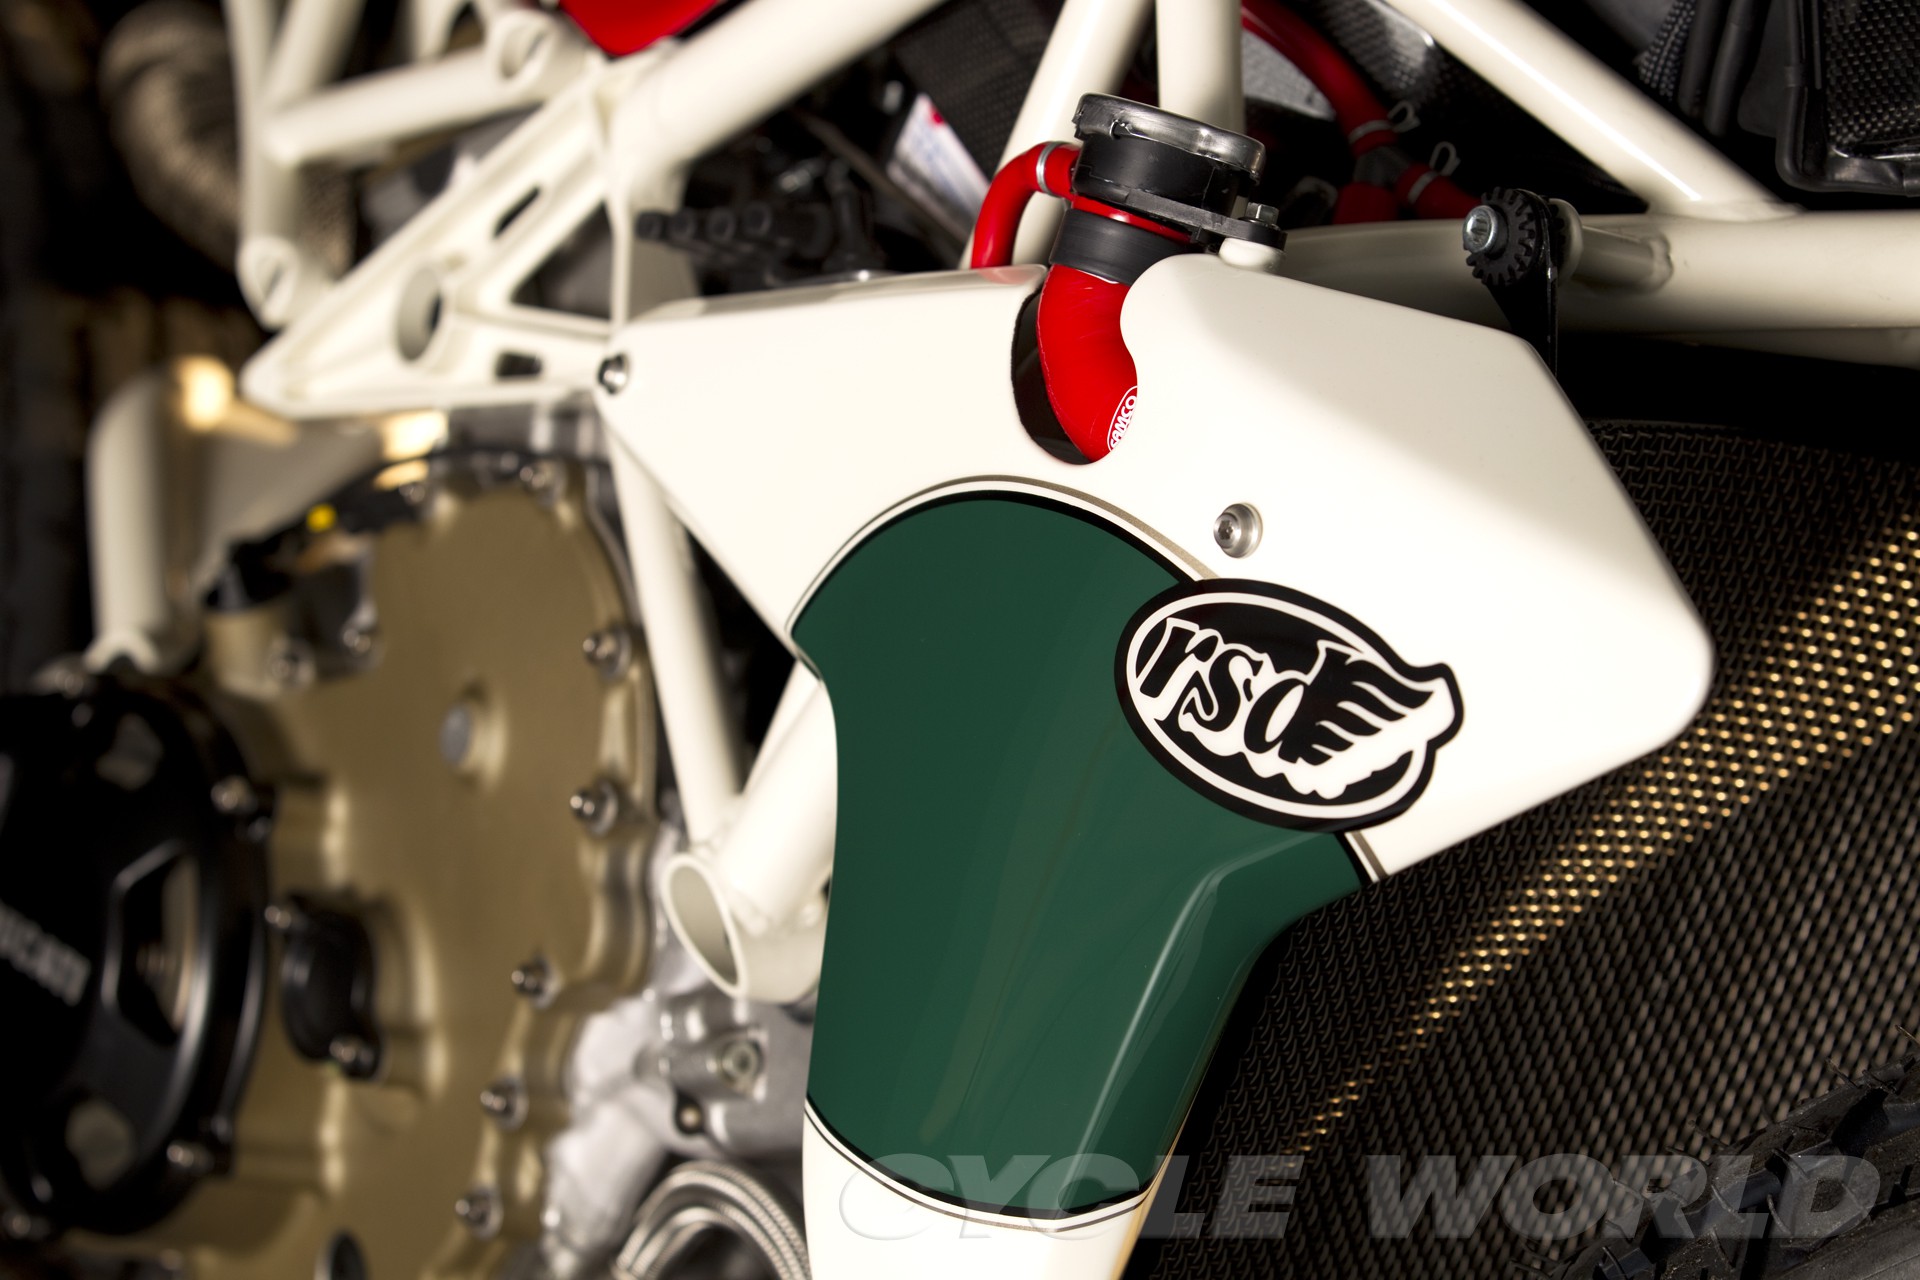 Desmosedici RR Dirt Track MotoGP